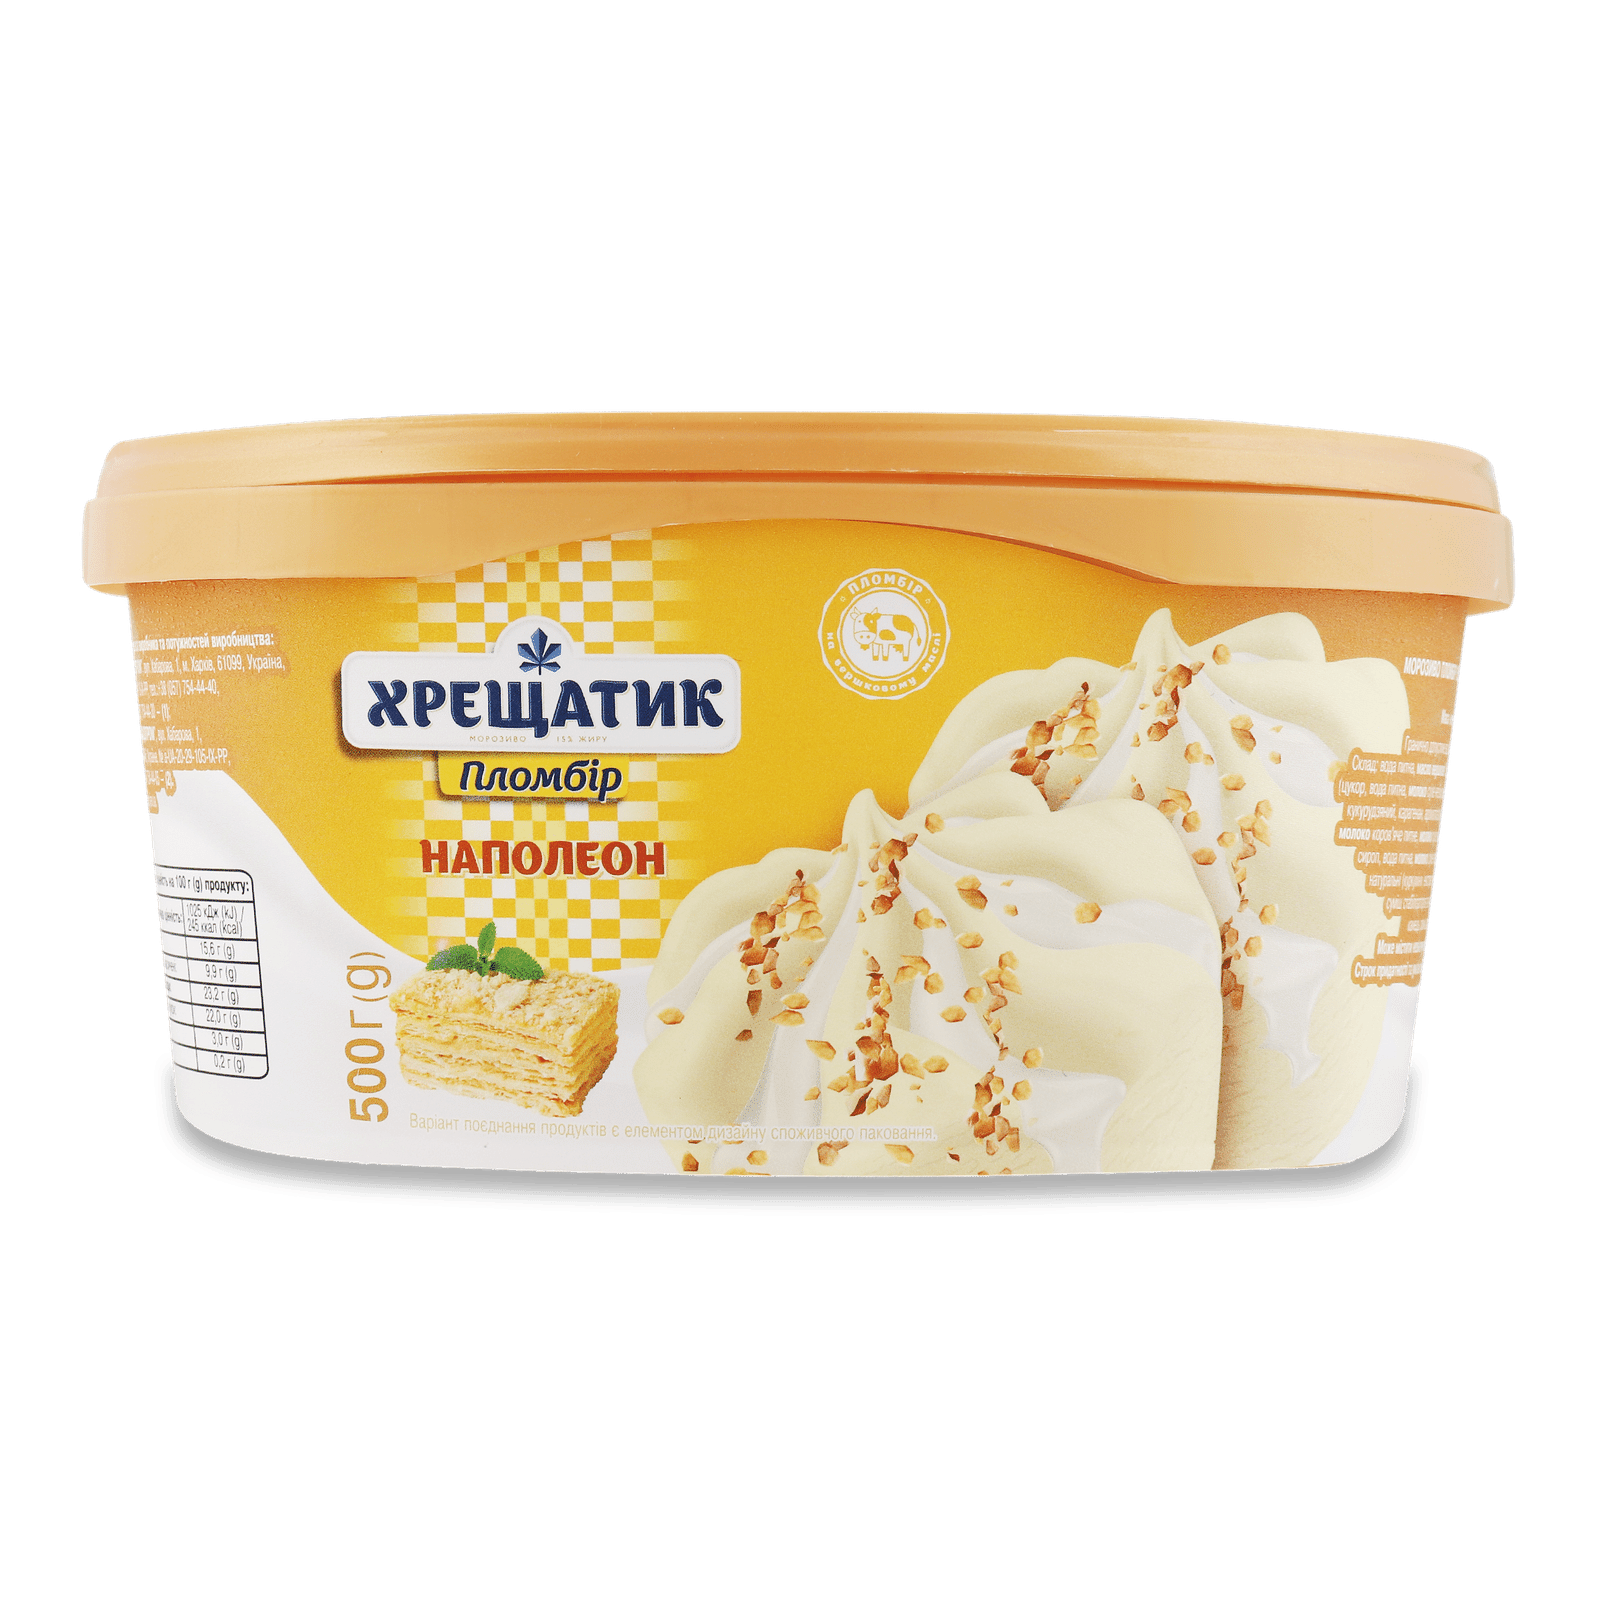 Морозиво «Хрещатик» «Наполеон» пломбір 15% - 1